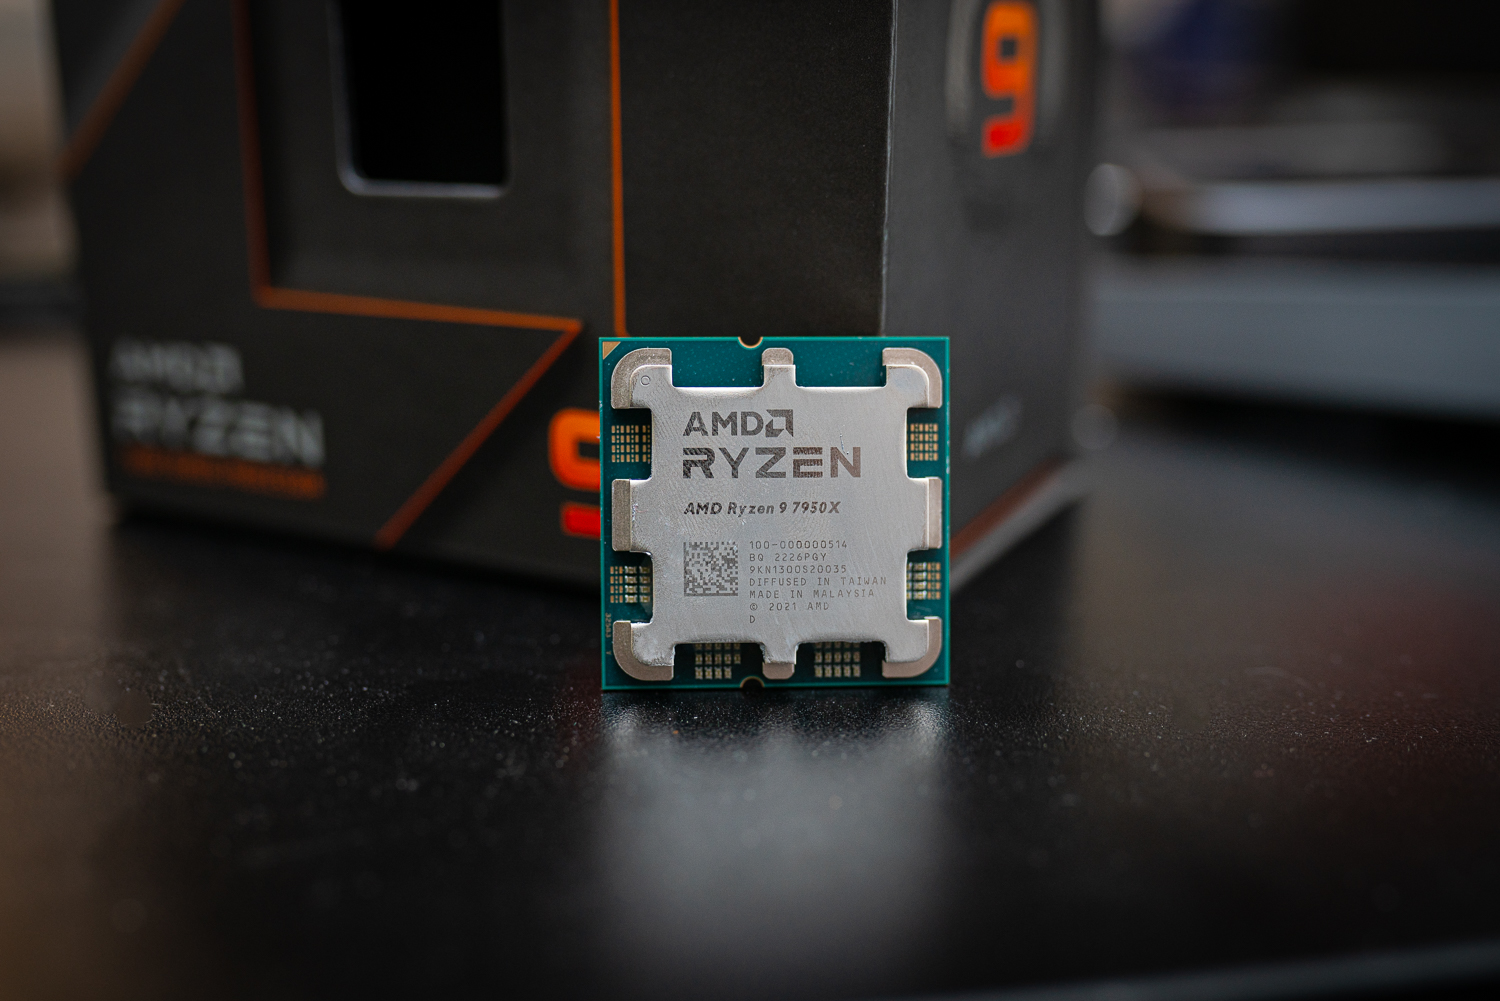 Ryzen 9 7950X अपने बॉक्स के सामने बैठा है।